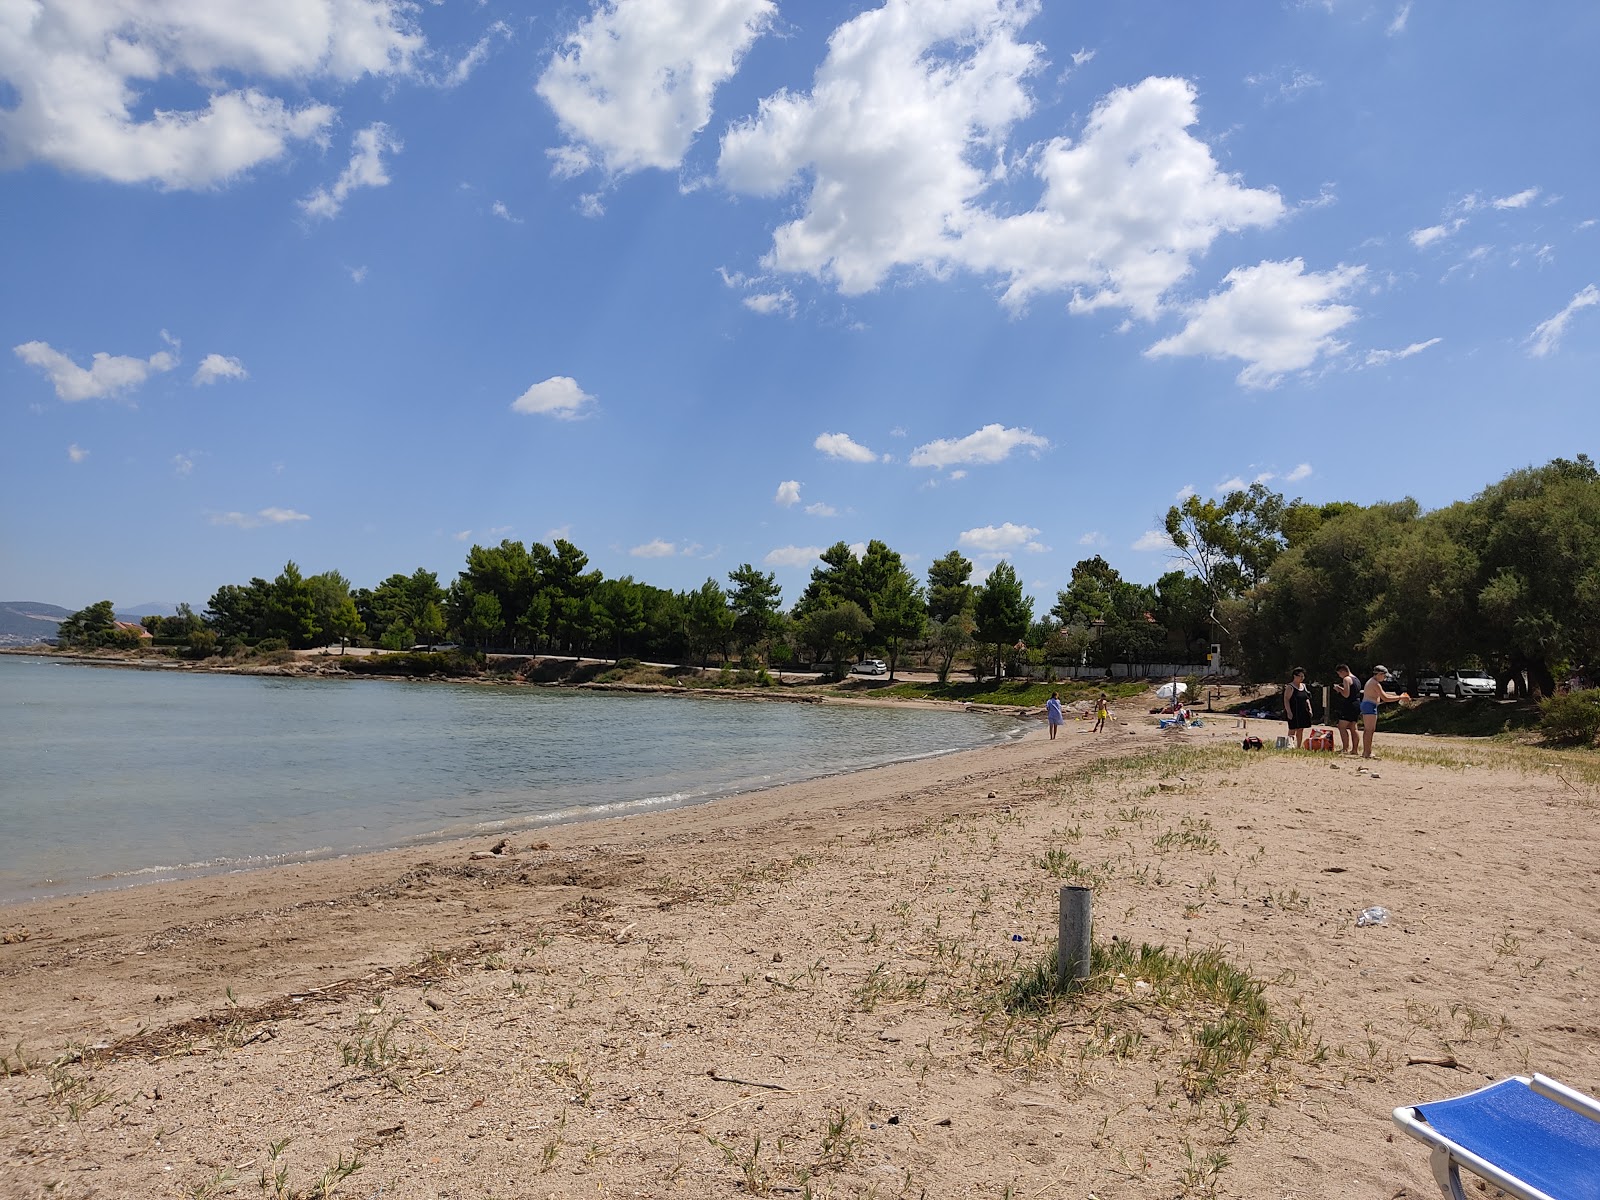 Fotografie cu Vournontas beach cu o suprafață de nisip maro